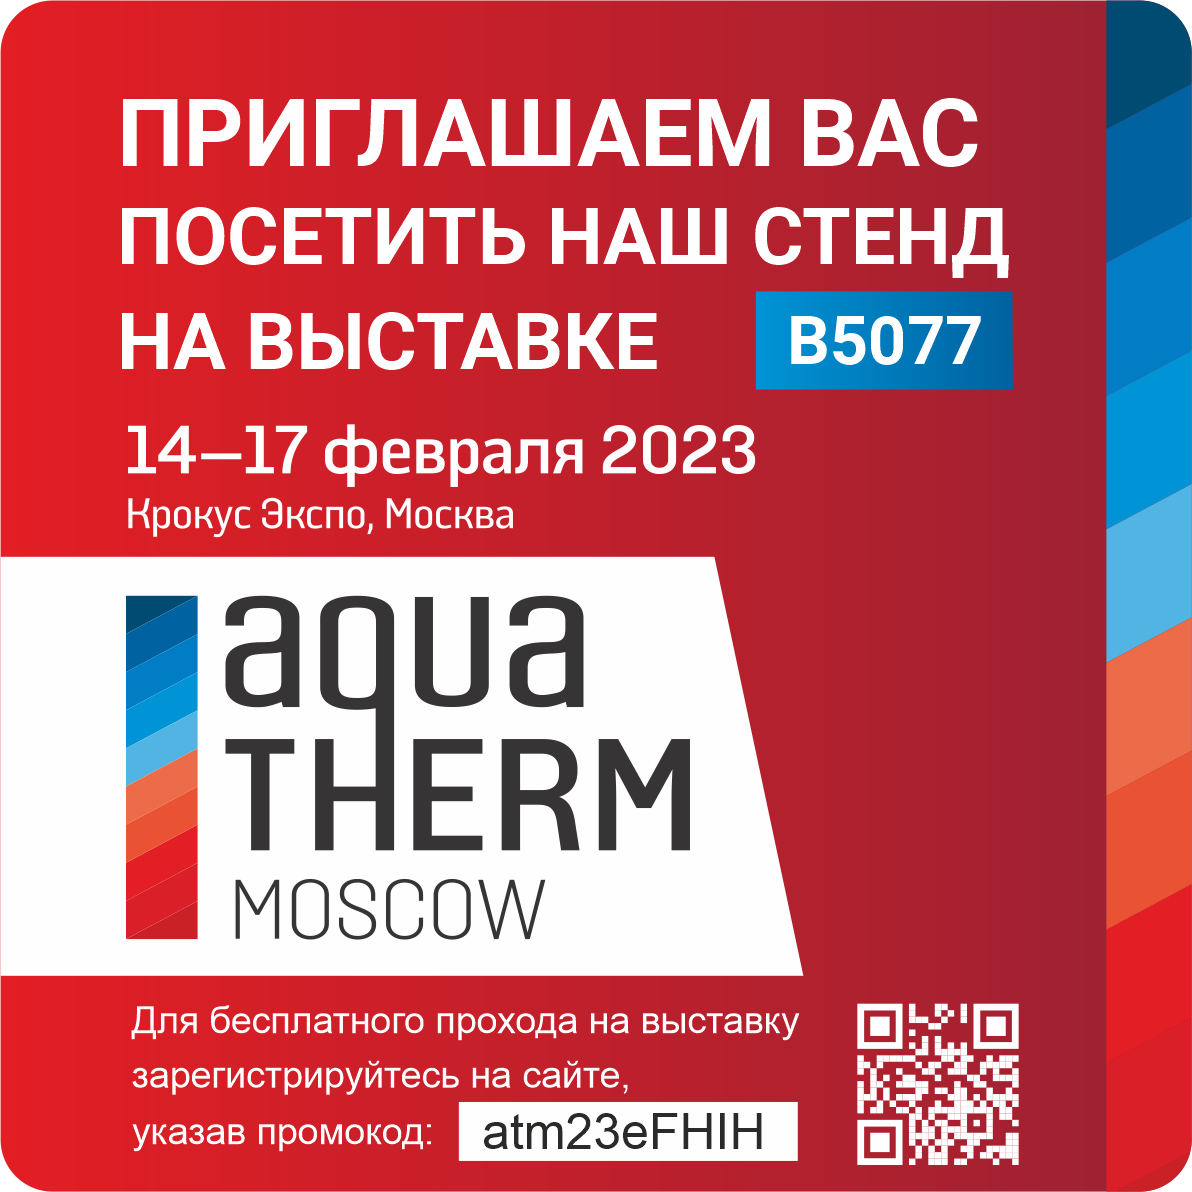 Приглашаем Вас на выставку Aquatherm Moscow 2023! 